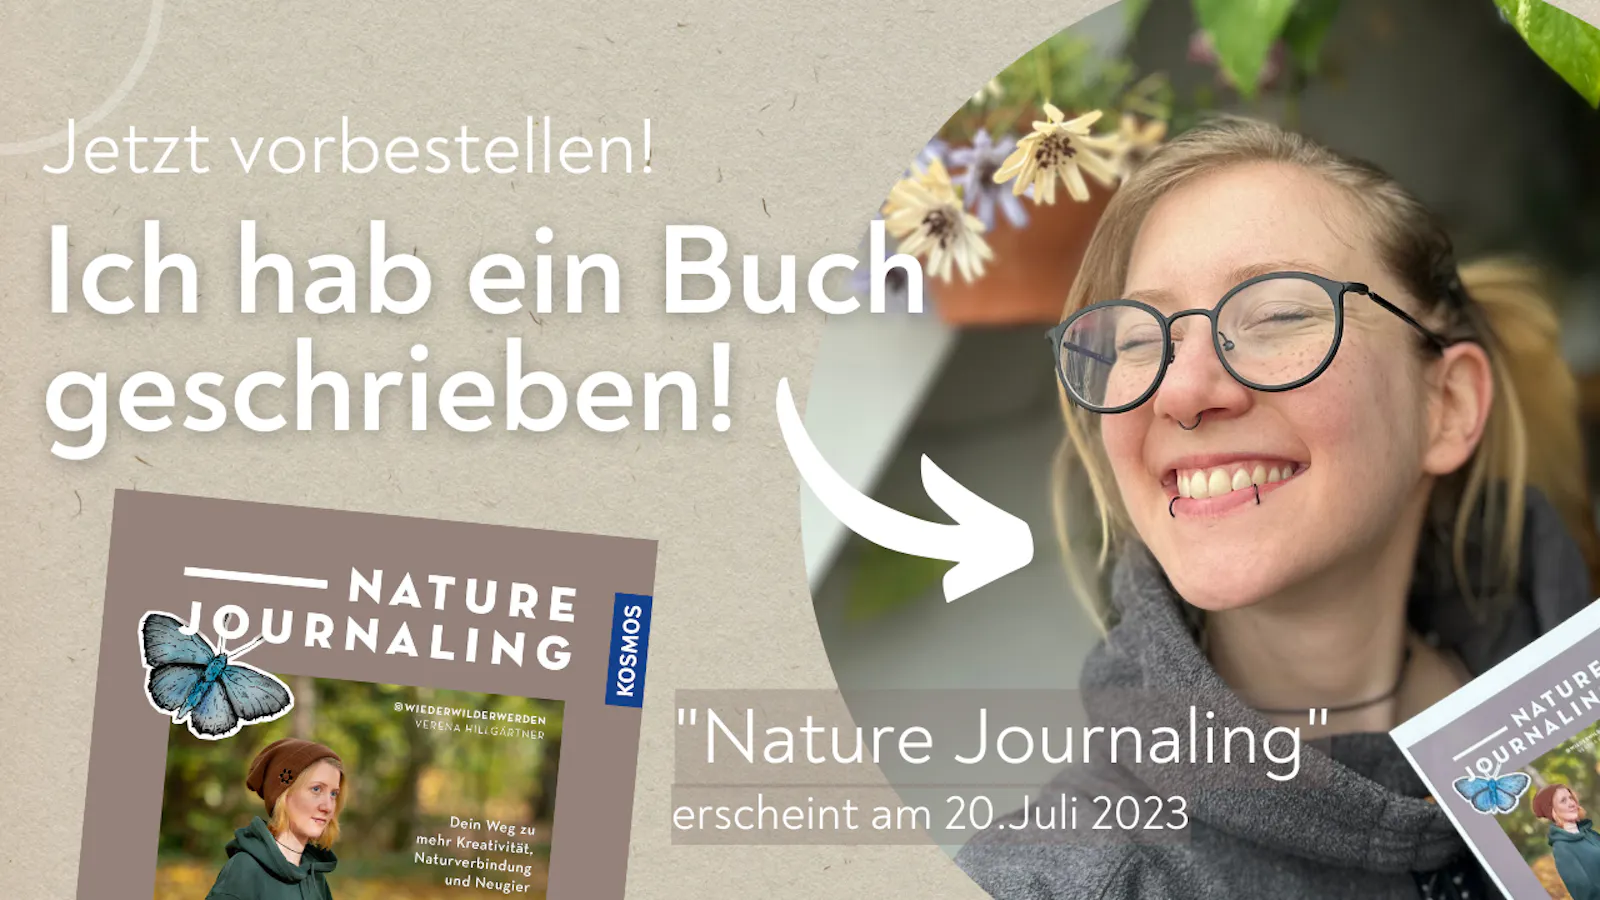 Verena hat ein Buch übers Nature Journaling geschrieben.